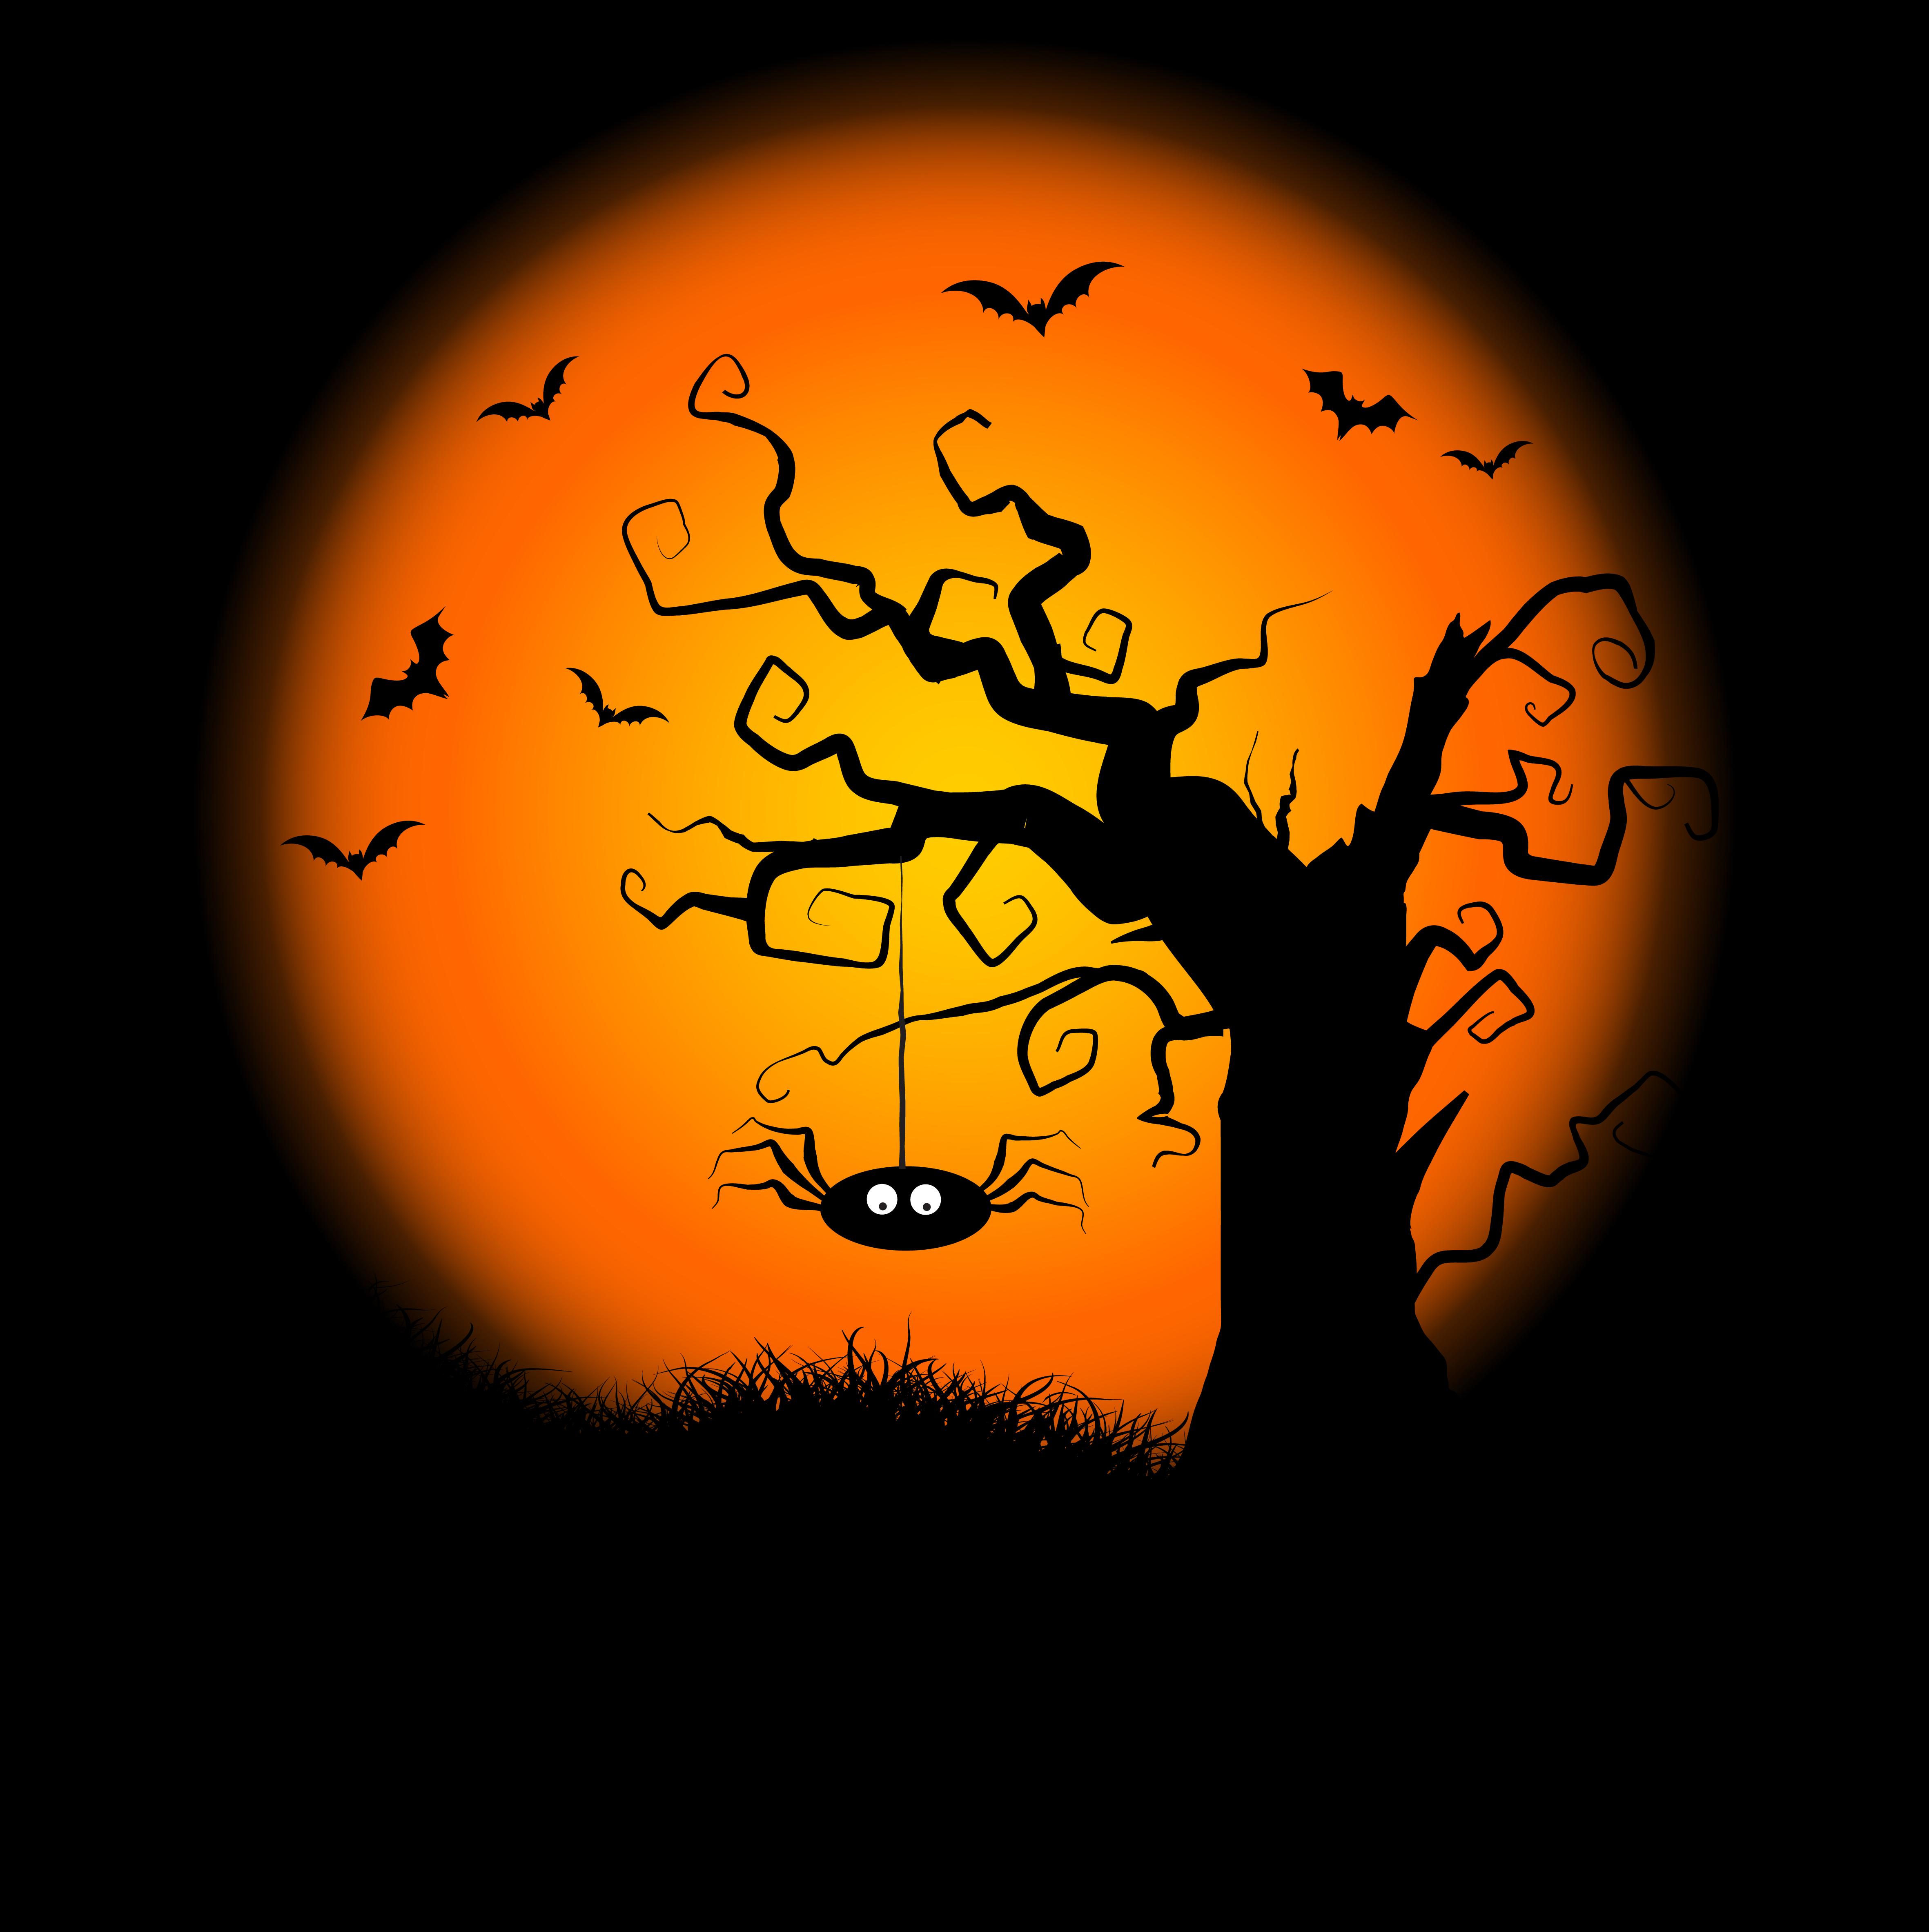 Spooky Halloween Tree Background 236774 Vector Art at Vecteezy